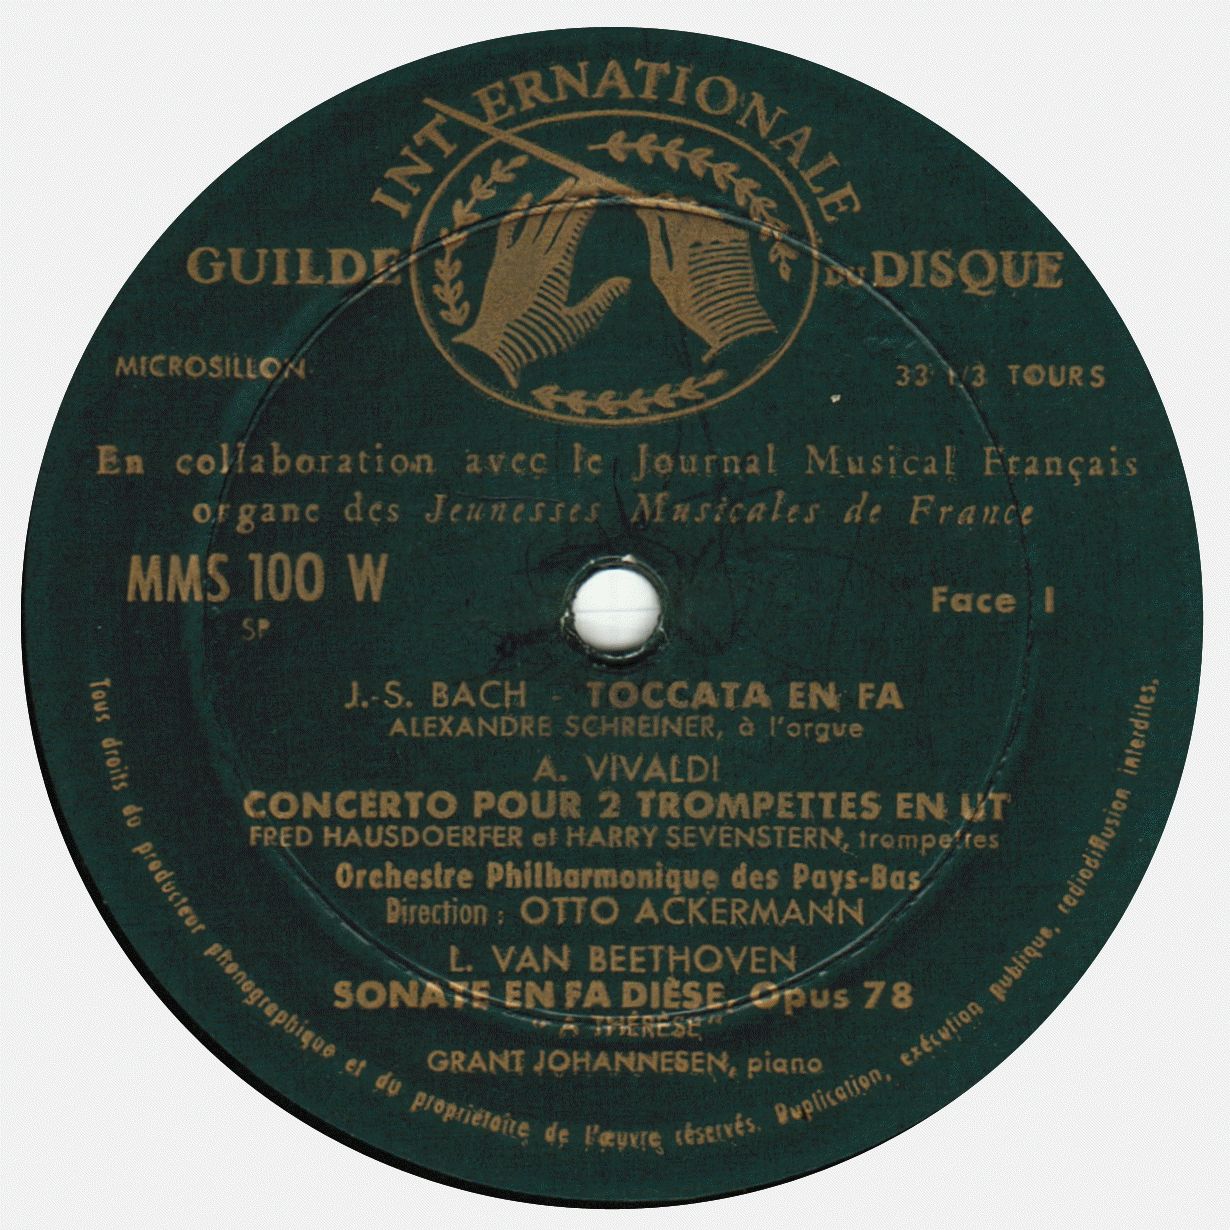 Étiquette face 1 du disque MMS 100 W, édition française, clicquer pour une vue agrandie